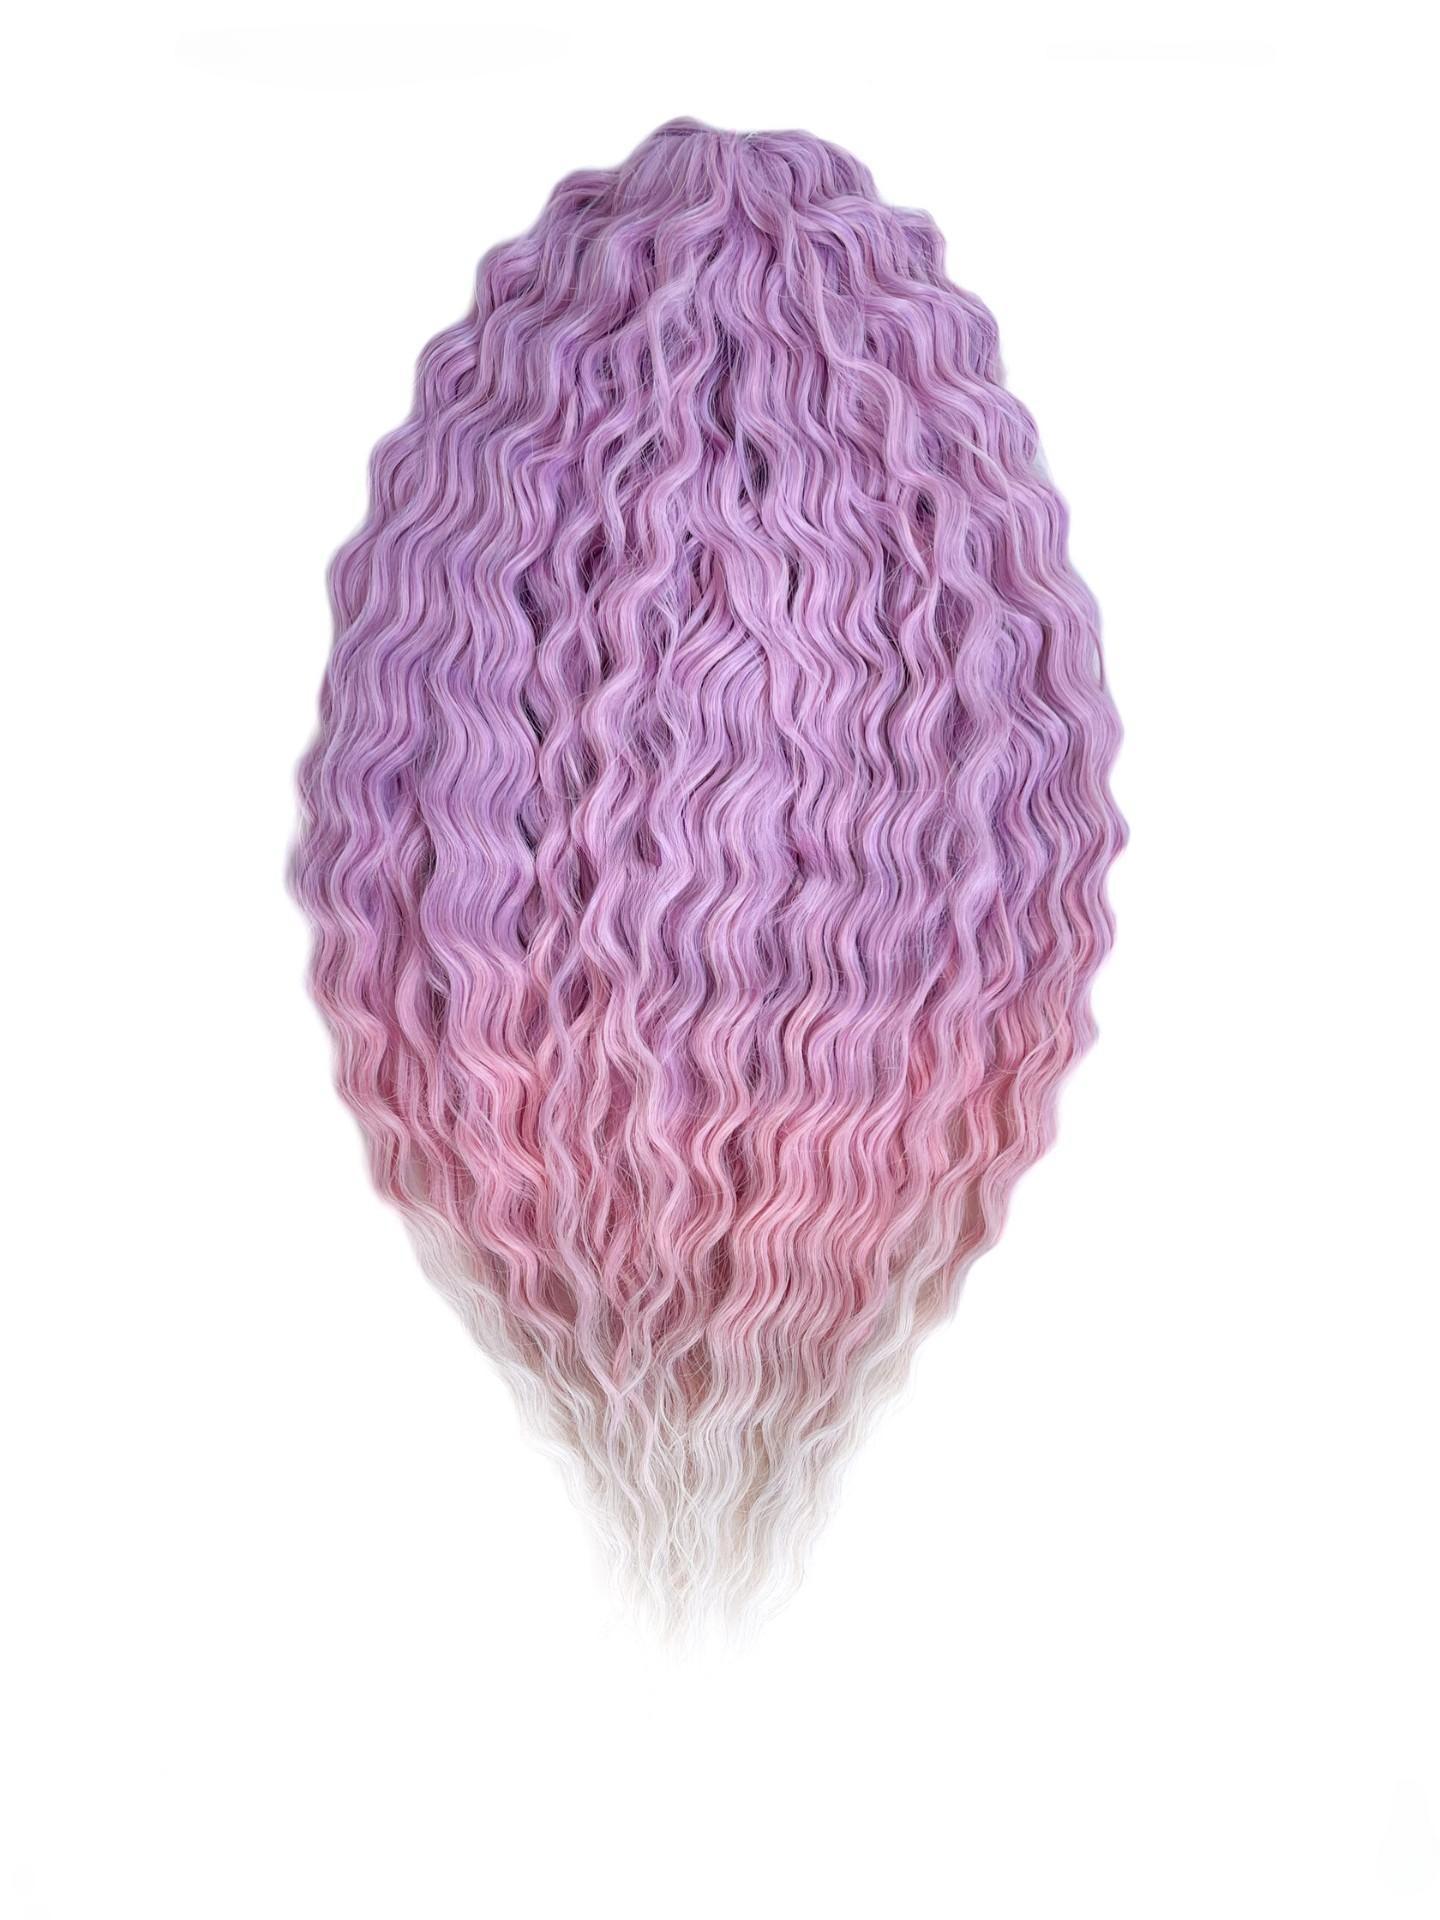 Афрокудри для плетения волос Ariel Ариэль цвет PPG3 длина 60см вес 300г резиночки для плетения браслетов rainbow loom персидская коллекция искристый каштан